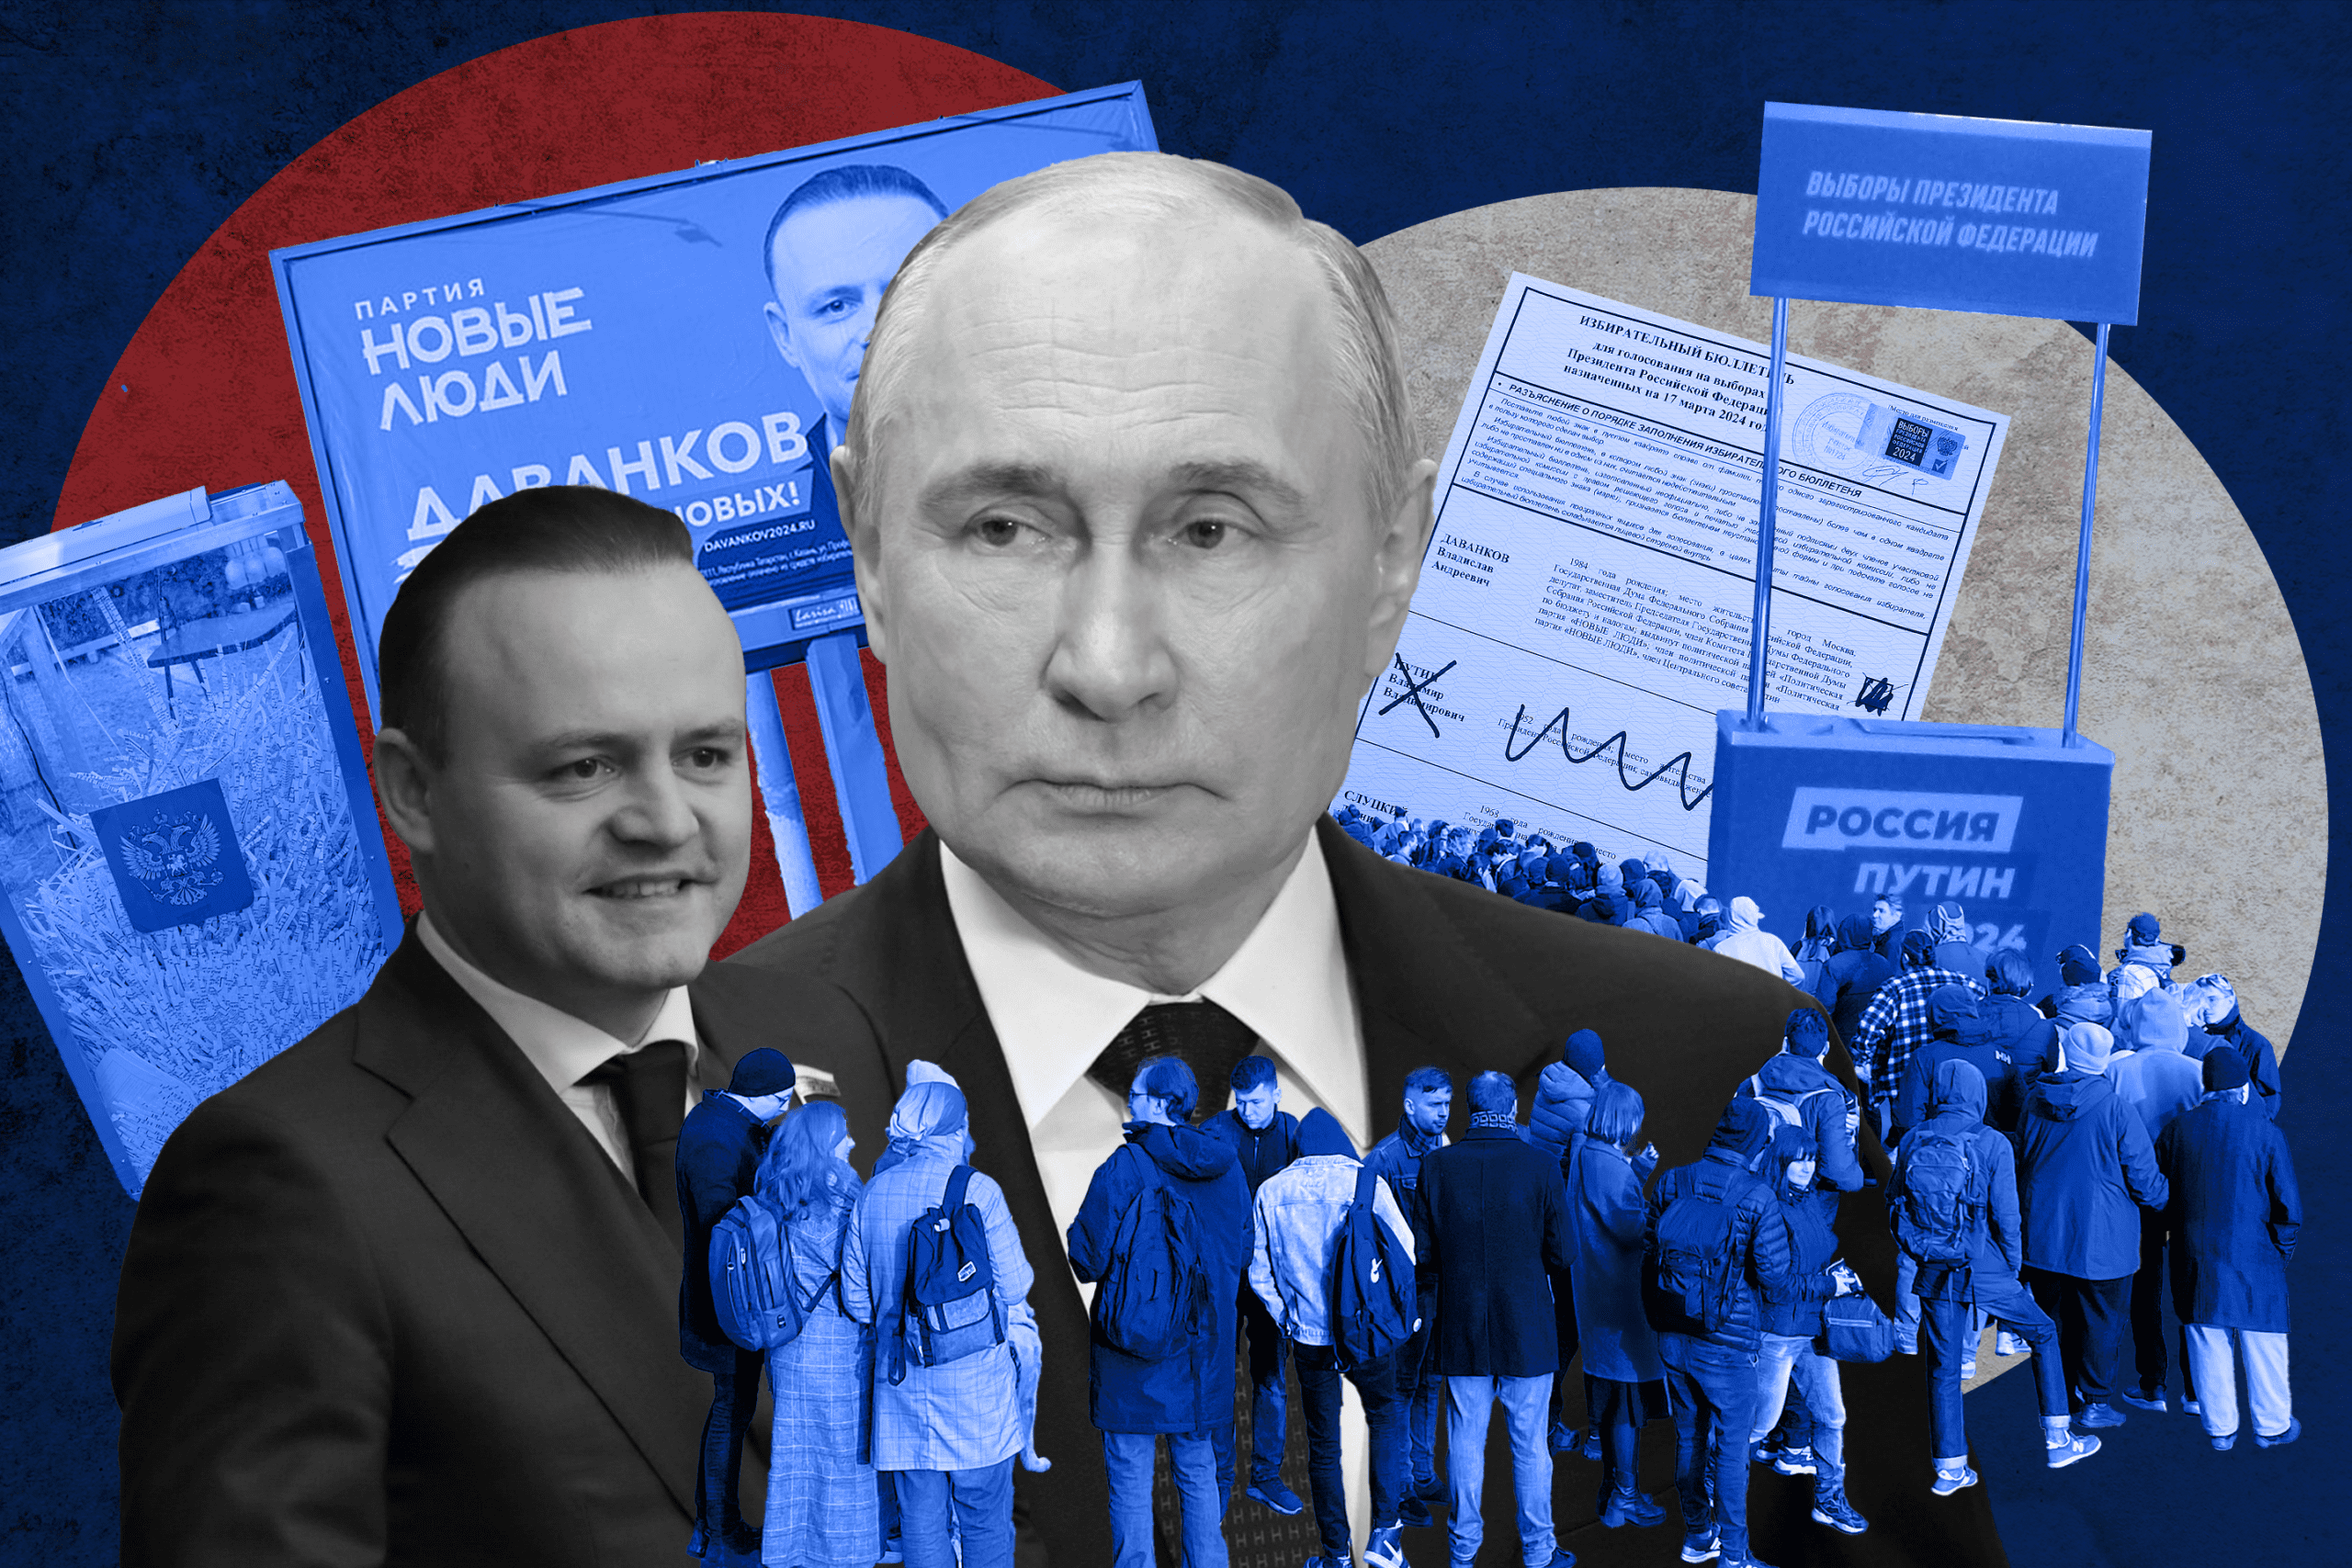 Repressive or Genuine Consolidation? Reading Putin’s Electoral Plebiscite